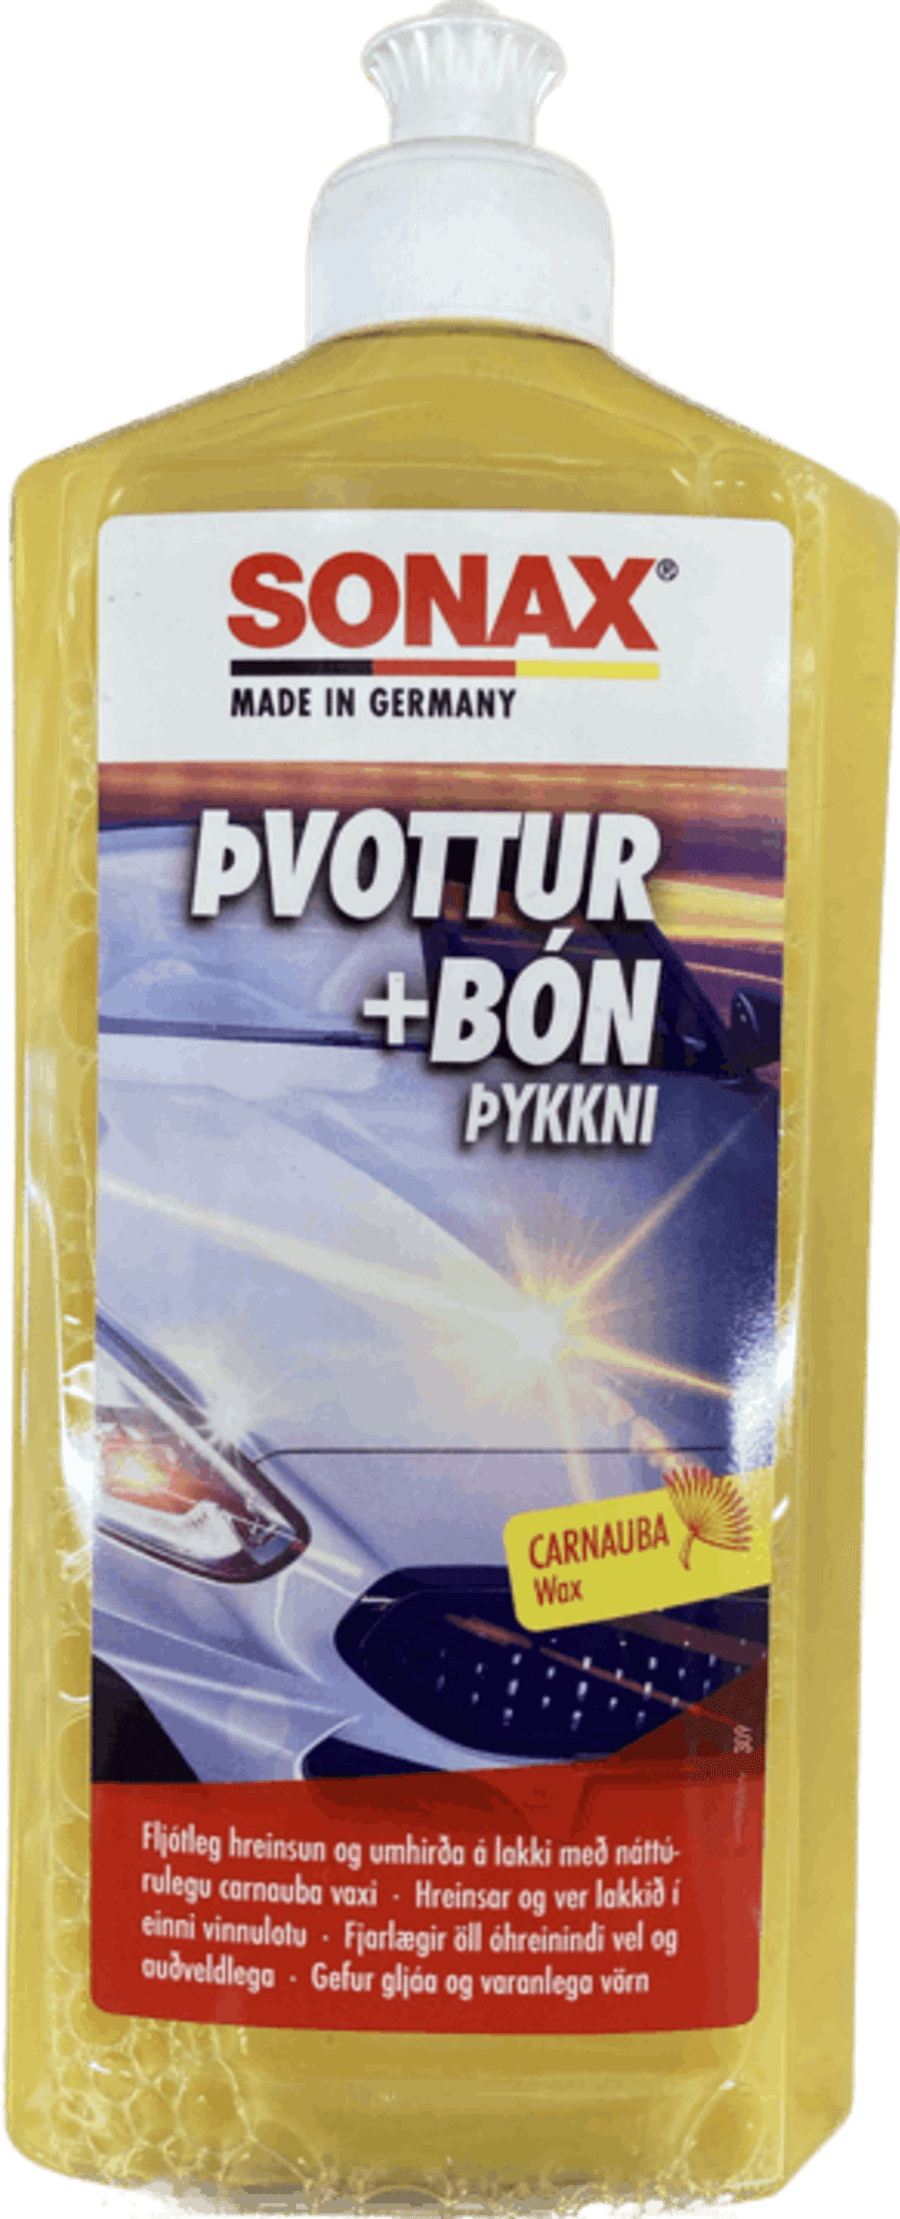 Sonax þvottur + bón 500 ml